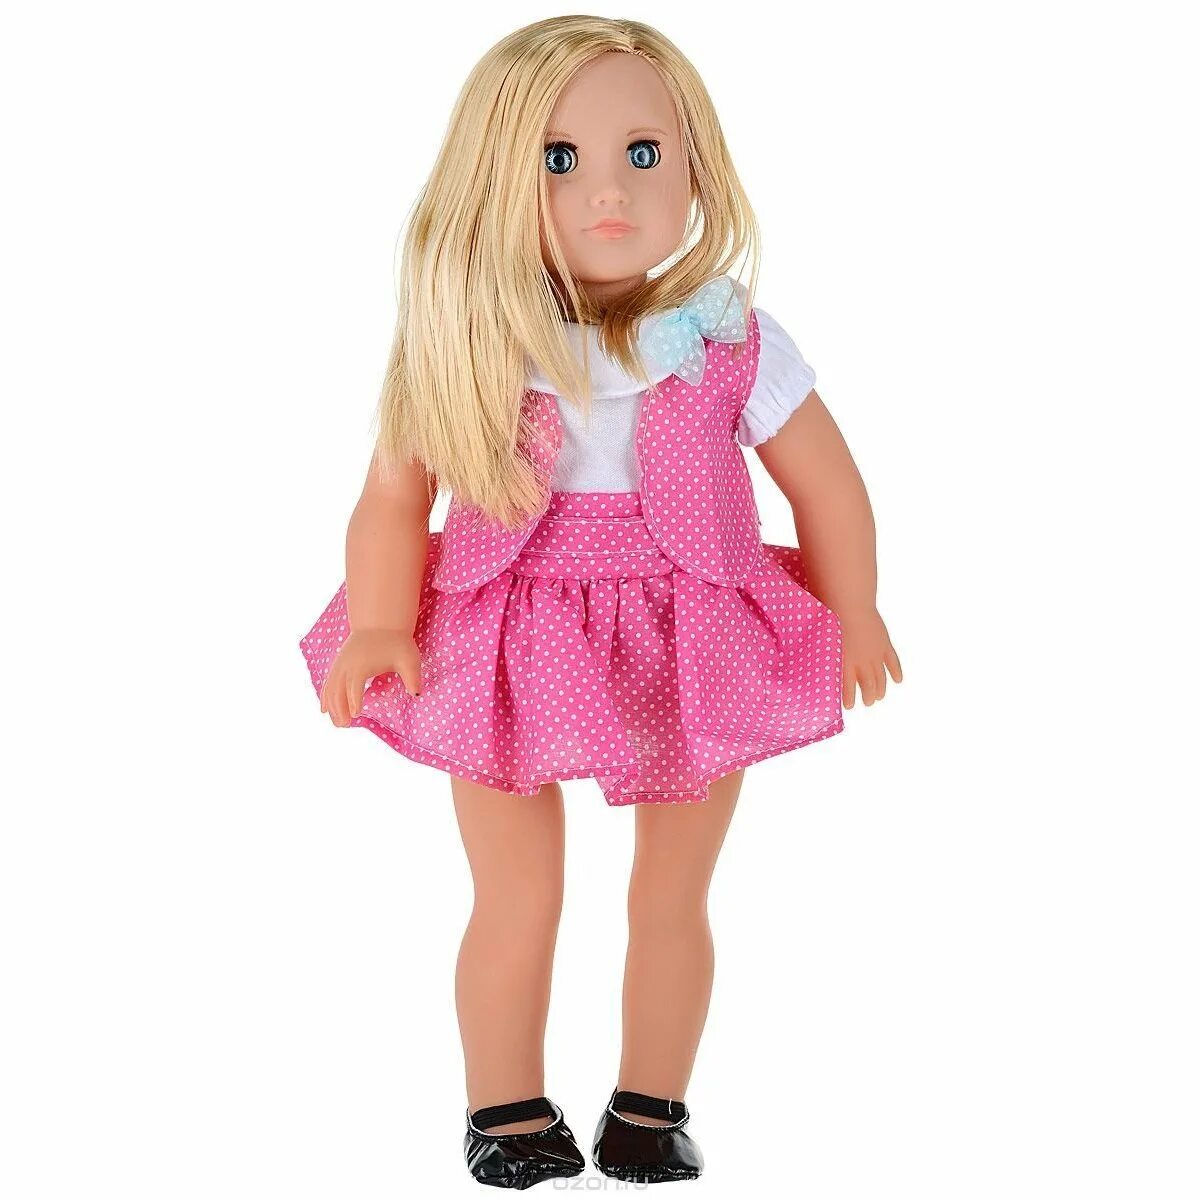 Игрушки про куклу. Concord Toys кукла 46 см. Кукла Concord Toys, 46 см, i1072051. Красивые игрушки для девочек. Куклы для девочек 6 лет.